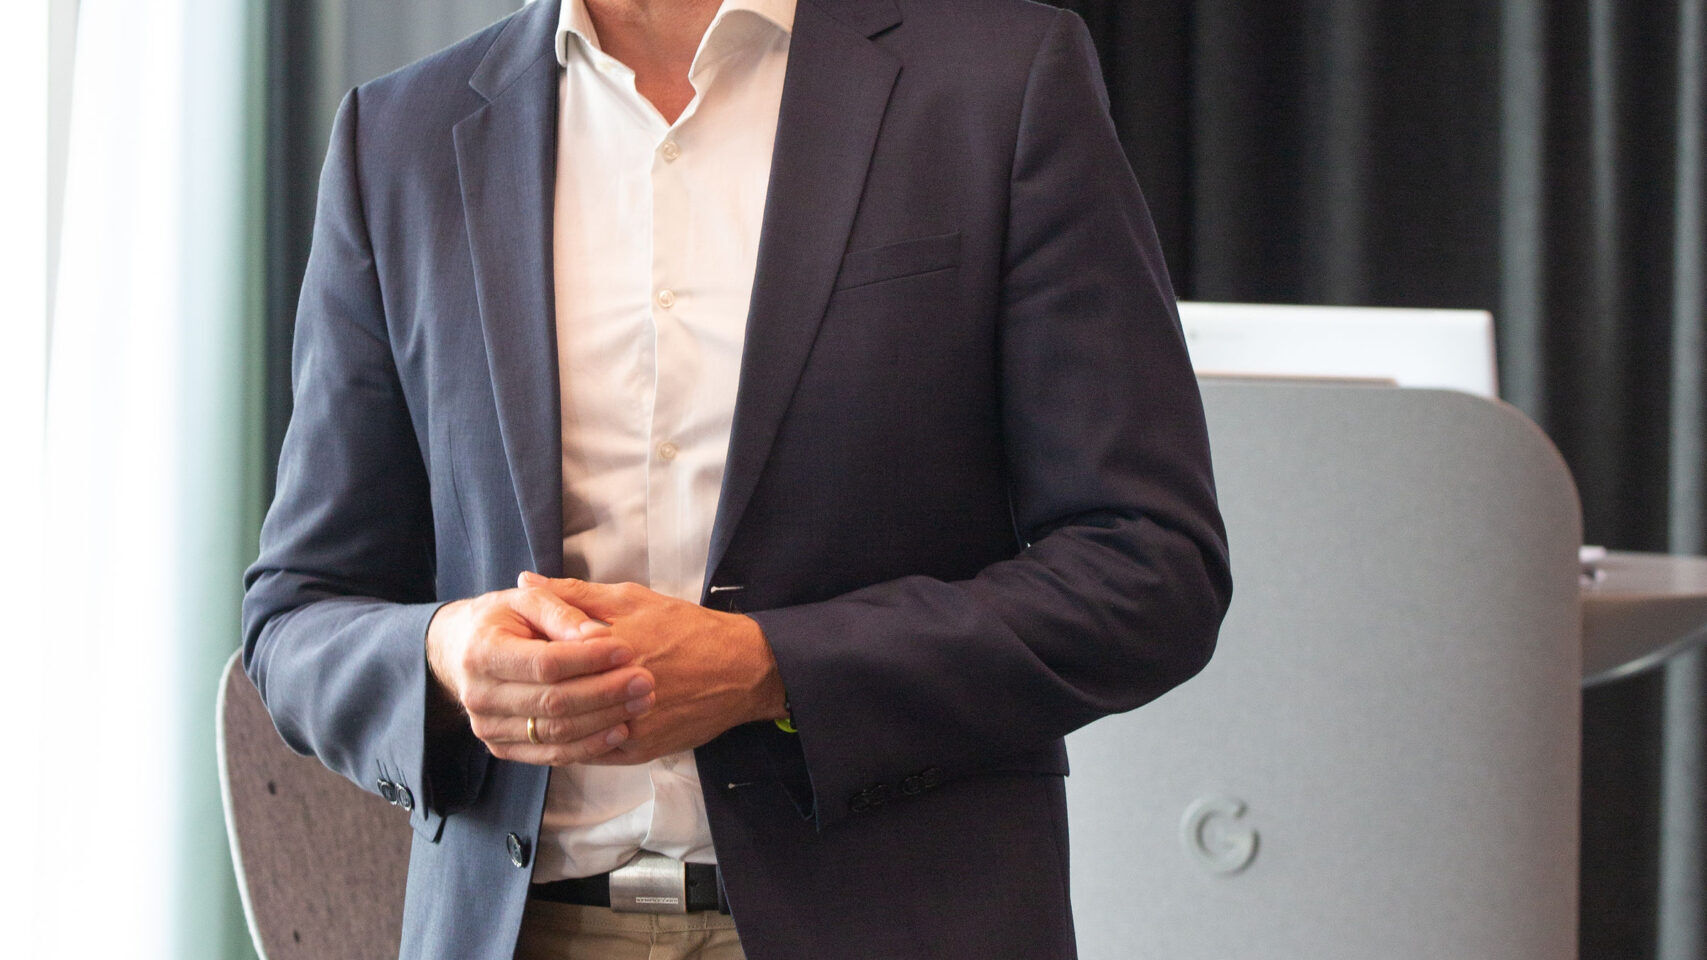 Andreas Briese, director de país de YouTube Alemania y director regional de Europa Central, asistió a la inauguración oficial del nuevo Google Campus Europaallee en Zúrich el 27 de junio de 2022.